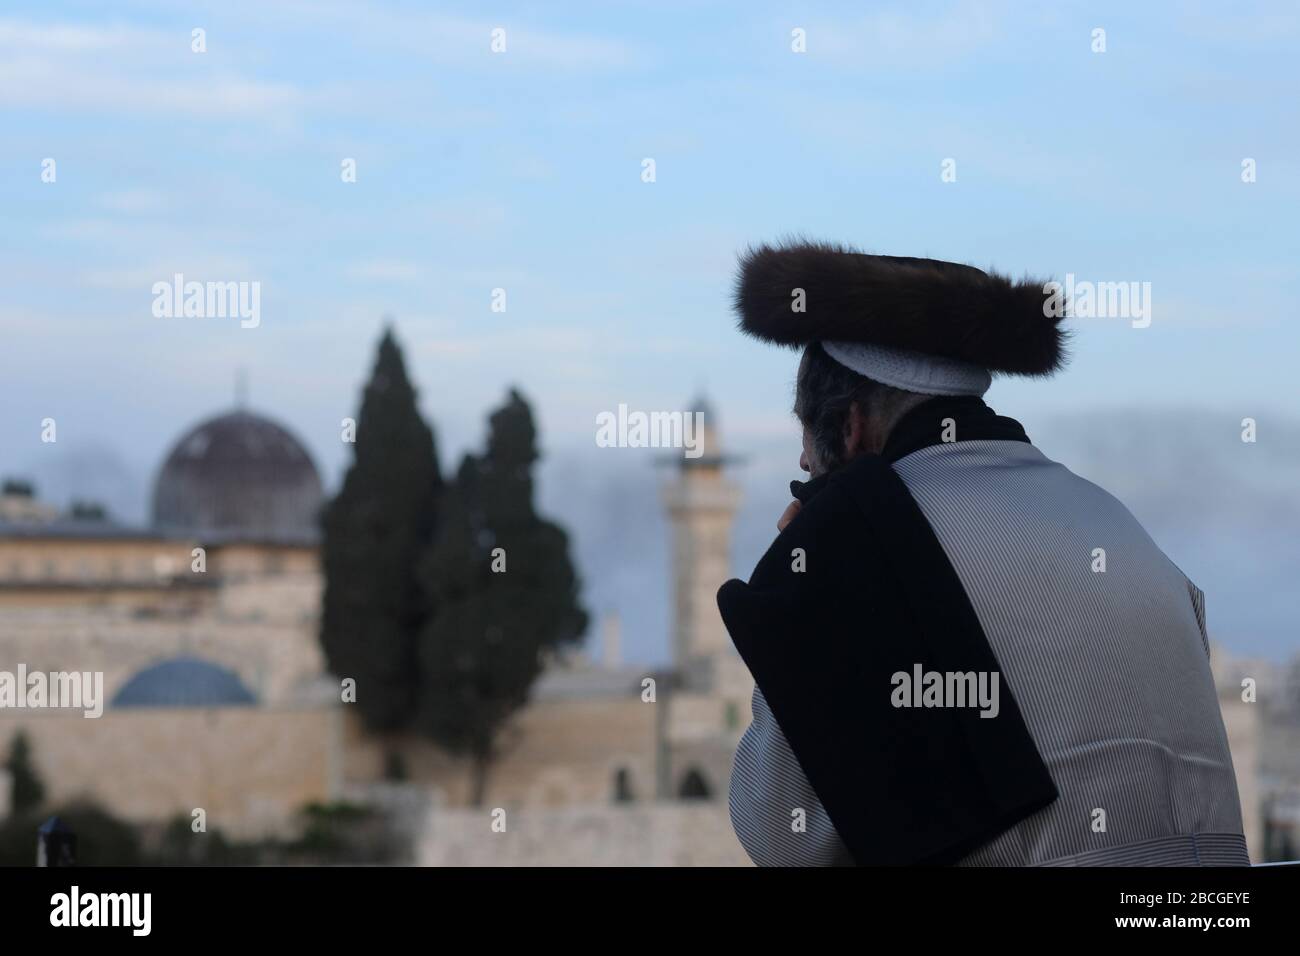 Un juif hassidique portant un shtreimel un chapeau de fourrure porté par de nombreux juifs haredi mariés regarde la mosquée Al Aqsa un sanctuaire islamique situé sur le Mont du Temple, connu des musulmans comme le Haram esh-Sharif dans la vieille ville de Jérusalem-est Israël Banque D'Images